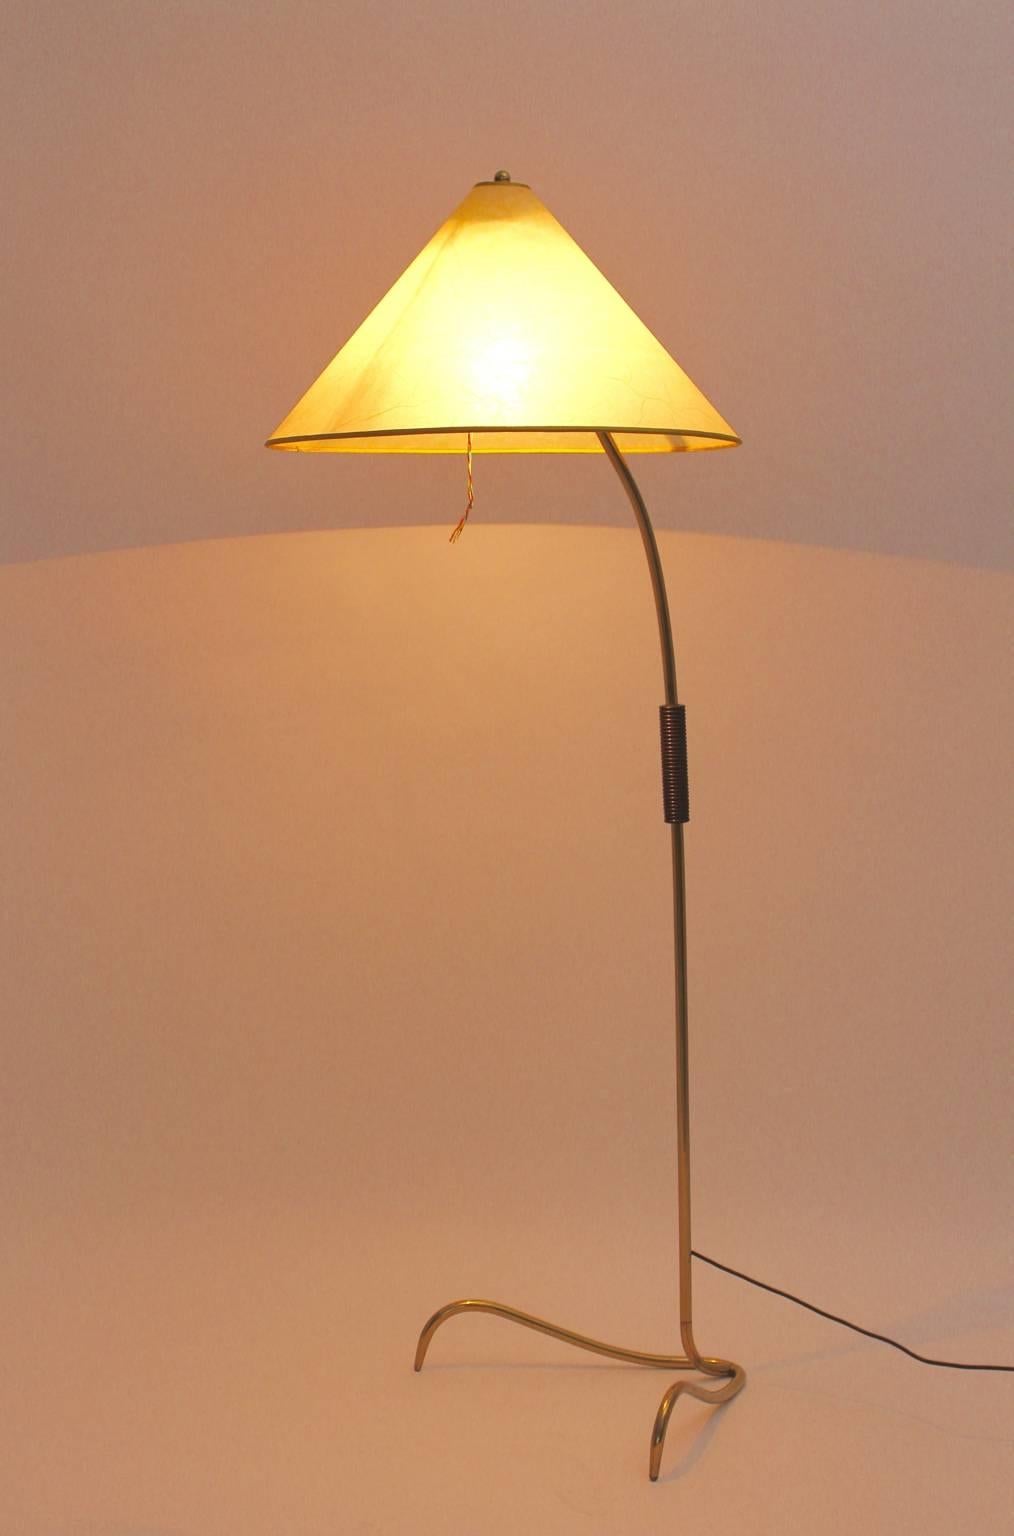 Brass Mid-Century Modern Floor Lamp Attributed to Kalmar 1950s Vienna